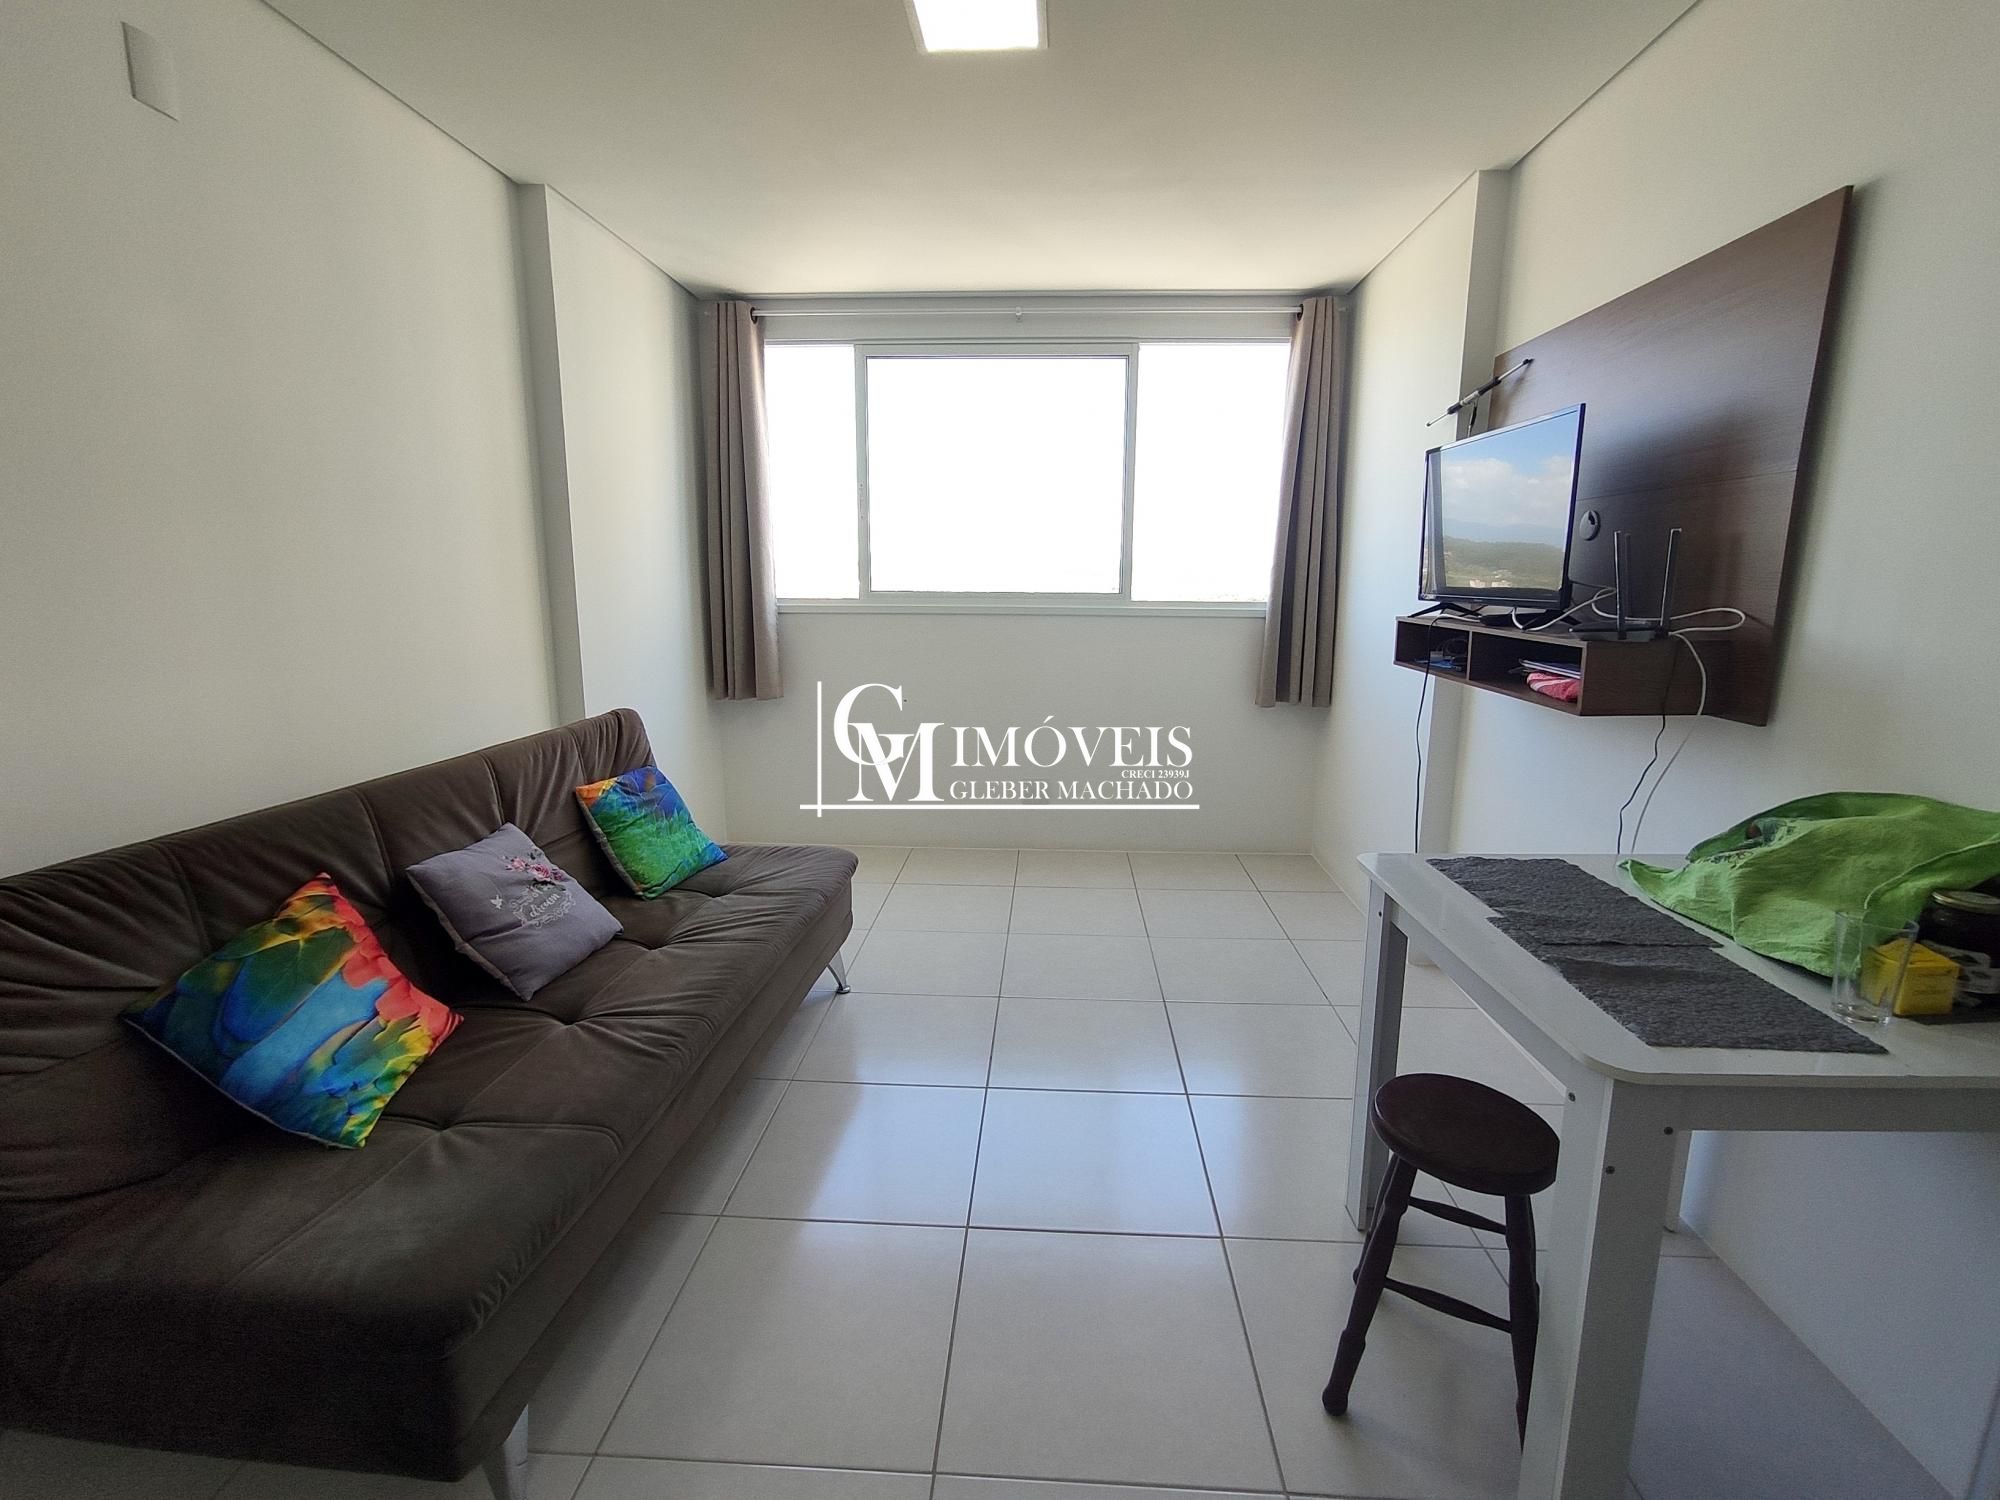 Apartamento 2 dormitórios em prédio com piscina Torres RS